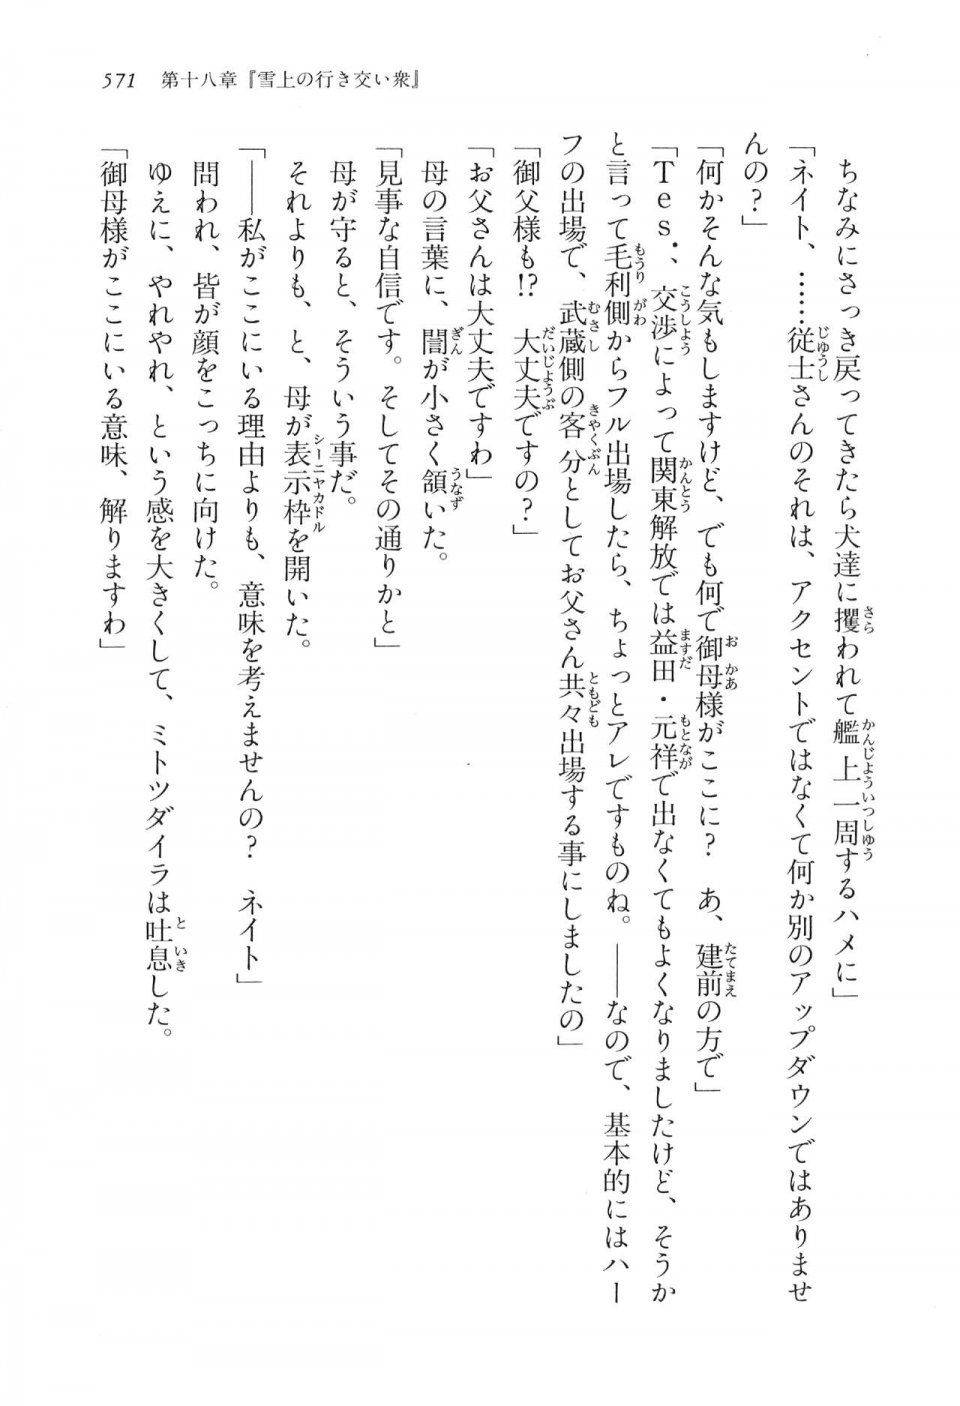 Kyoukai Senjou no Horizon LN Vol 16(7A) - Photo #571